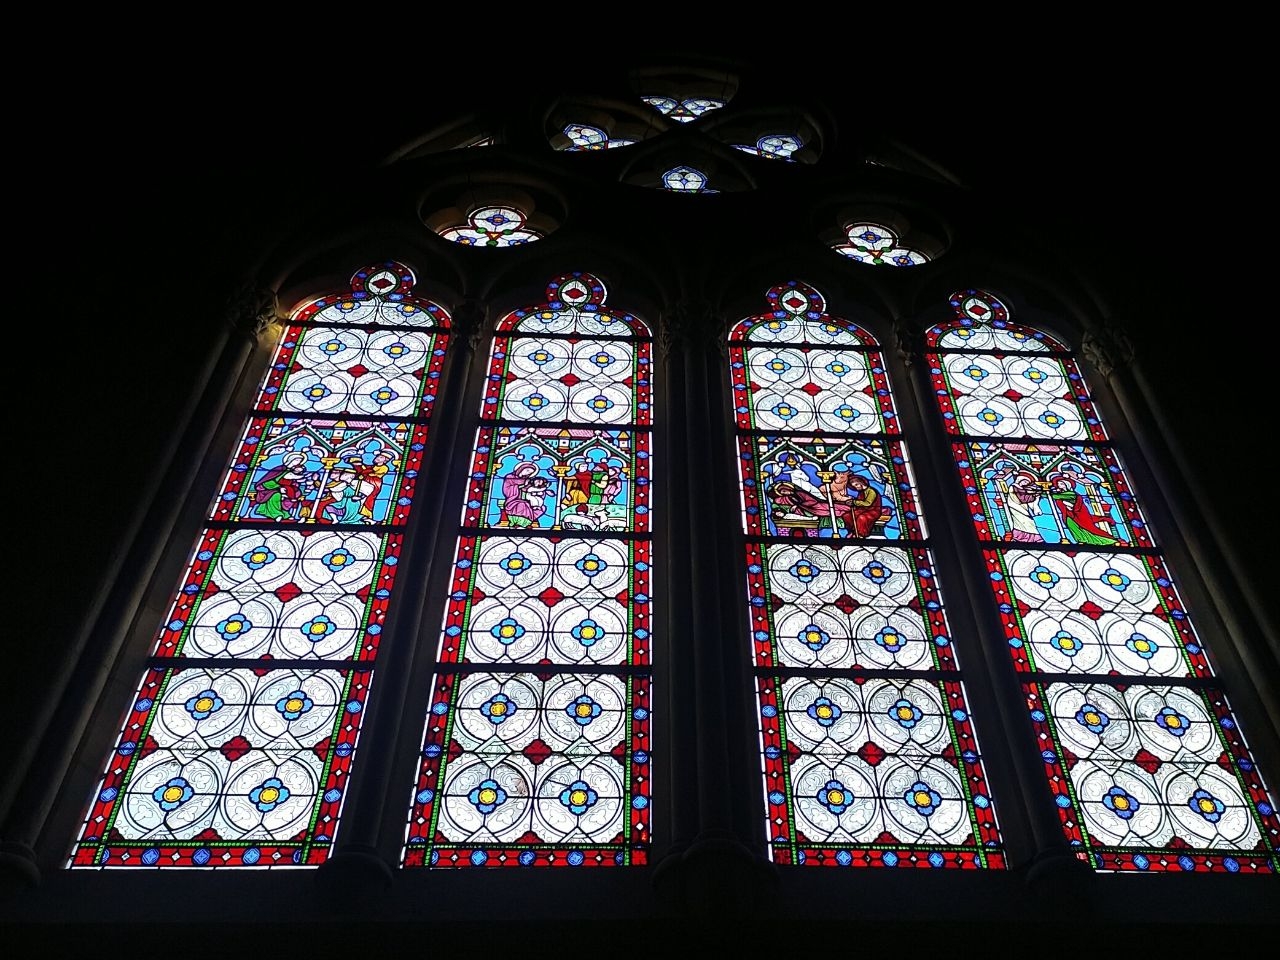 Кафедральный собор Св. Марии Байоннской Байонна, Франция